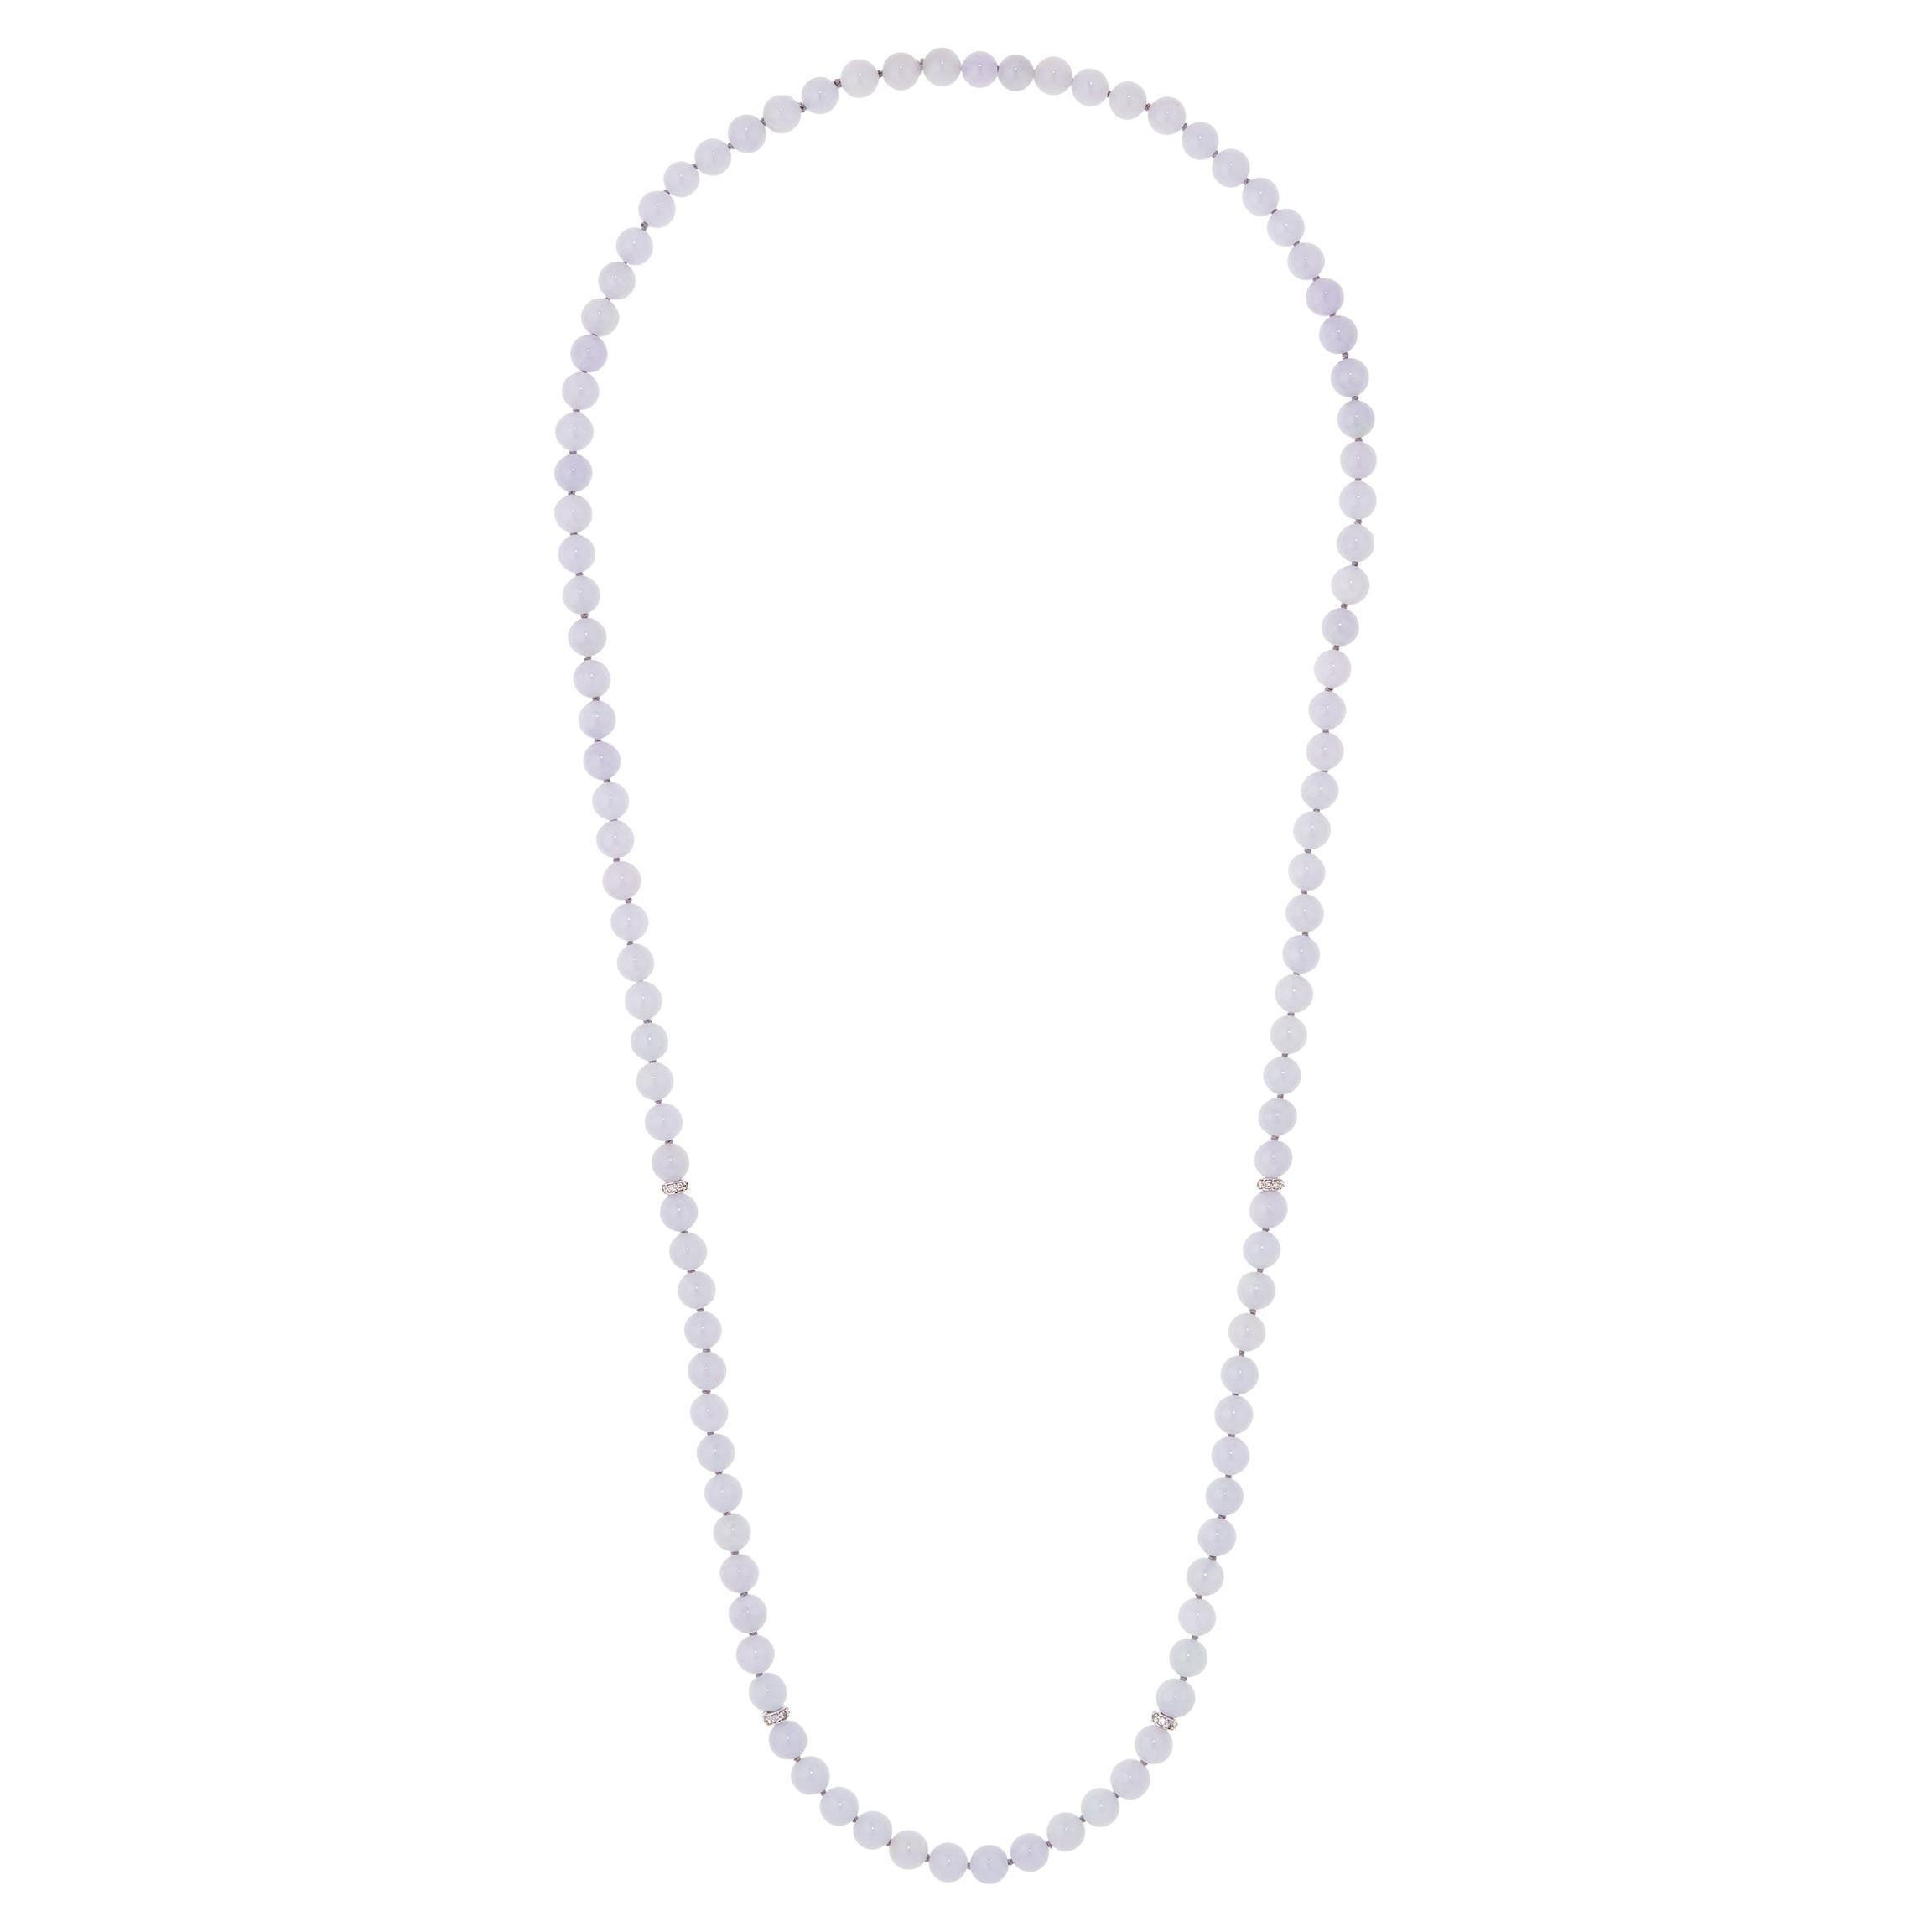 GIA Lavender Jadeite Necklace with Diamond Rondelles in 18 Karat White Gold